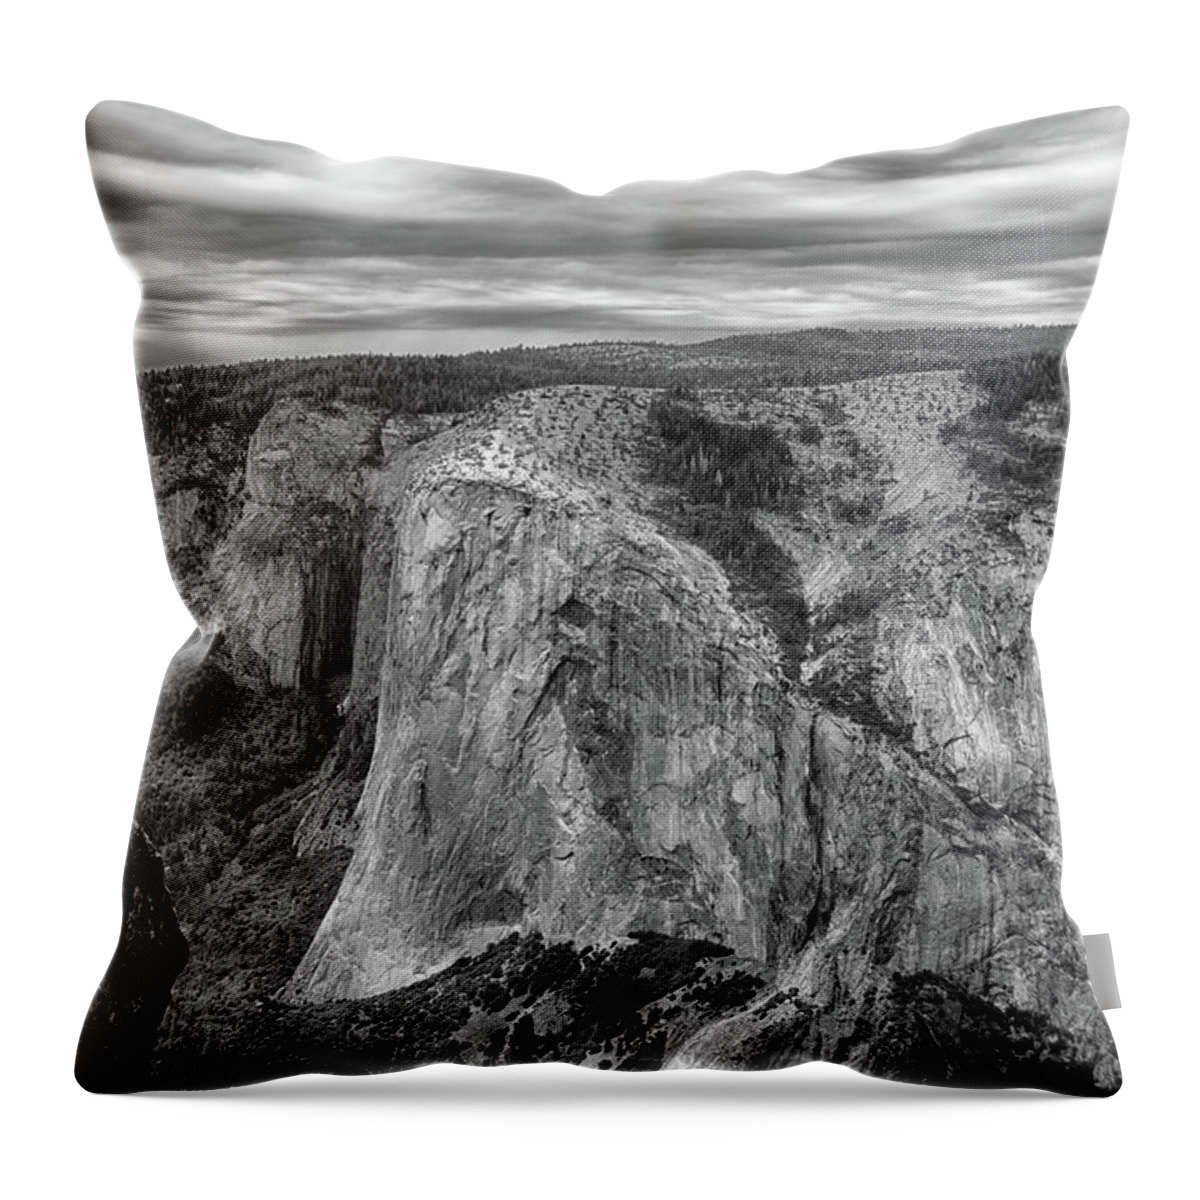 Taft Point And El Capitan Throw Pillow featuring the photograph Taft Point and El Capitan by Raymond Salani III